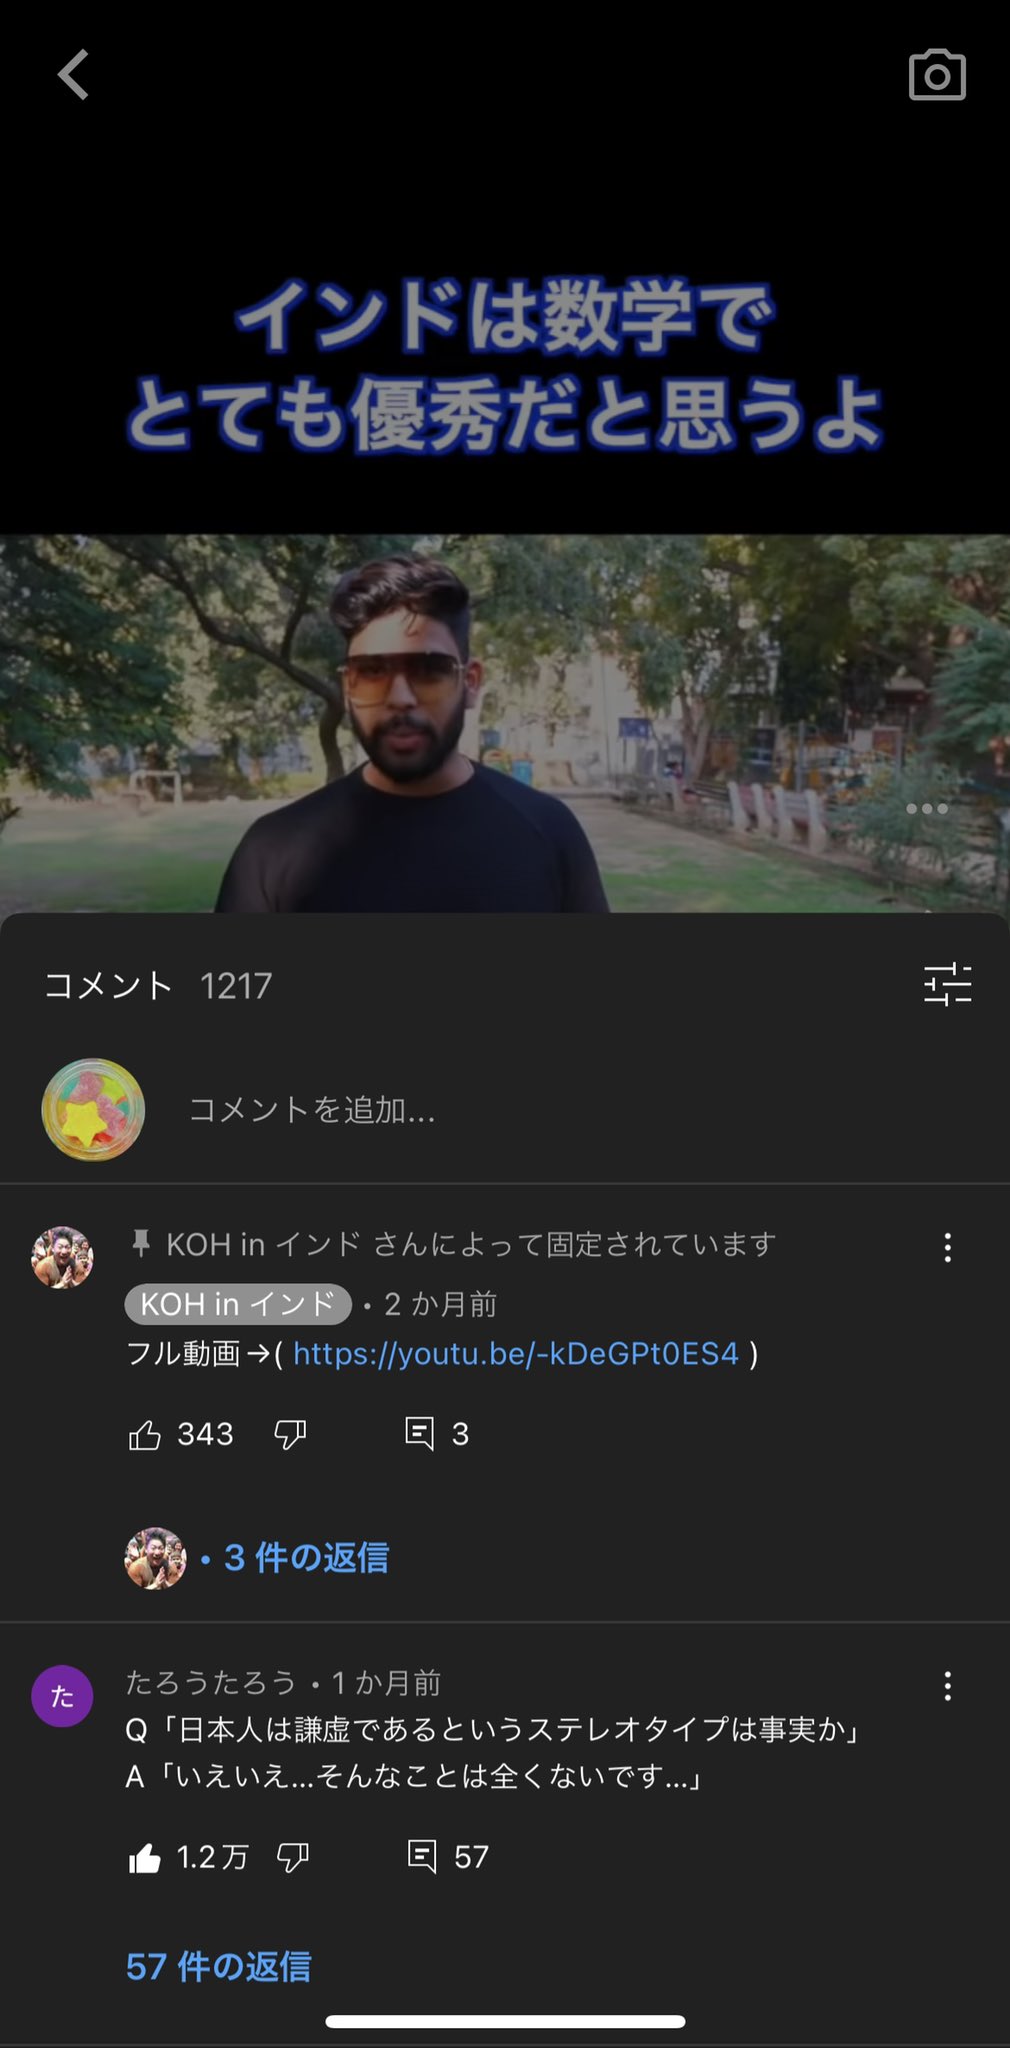 Youtube迷コメント集 Q 日本人は謙虚であるというステレオタイプは事実か T Co Ue6mgjbsjv Twitter